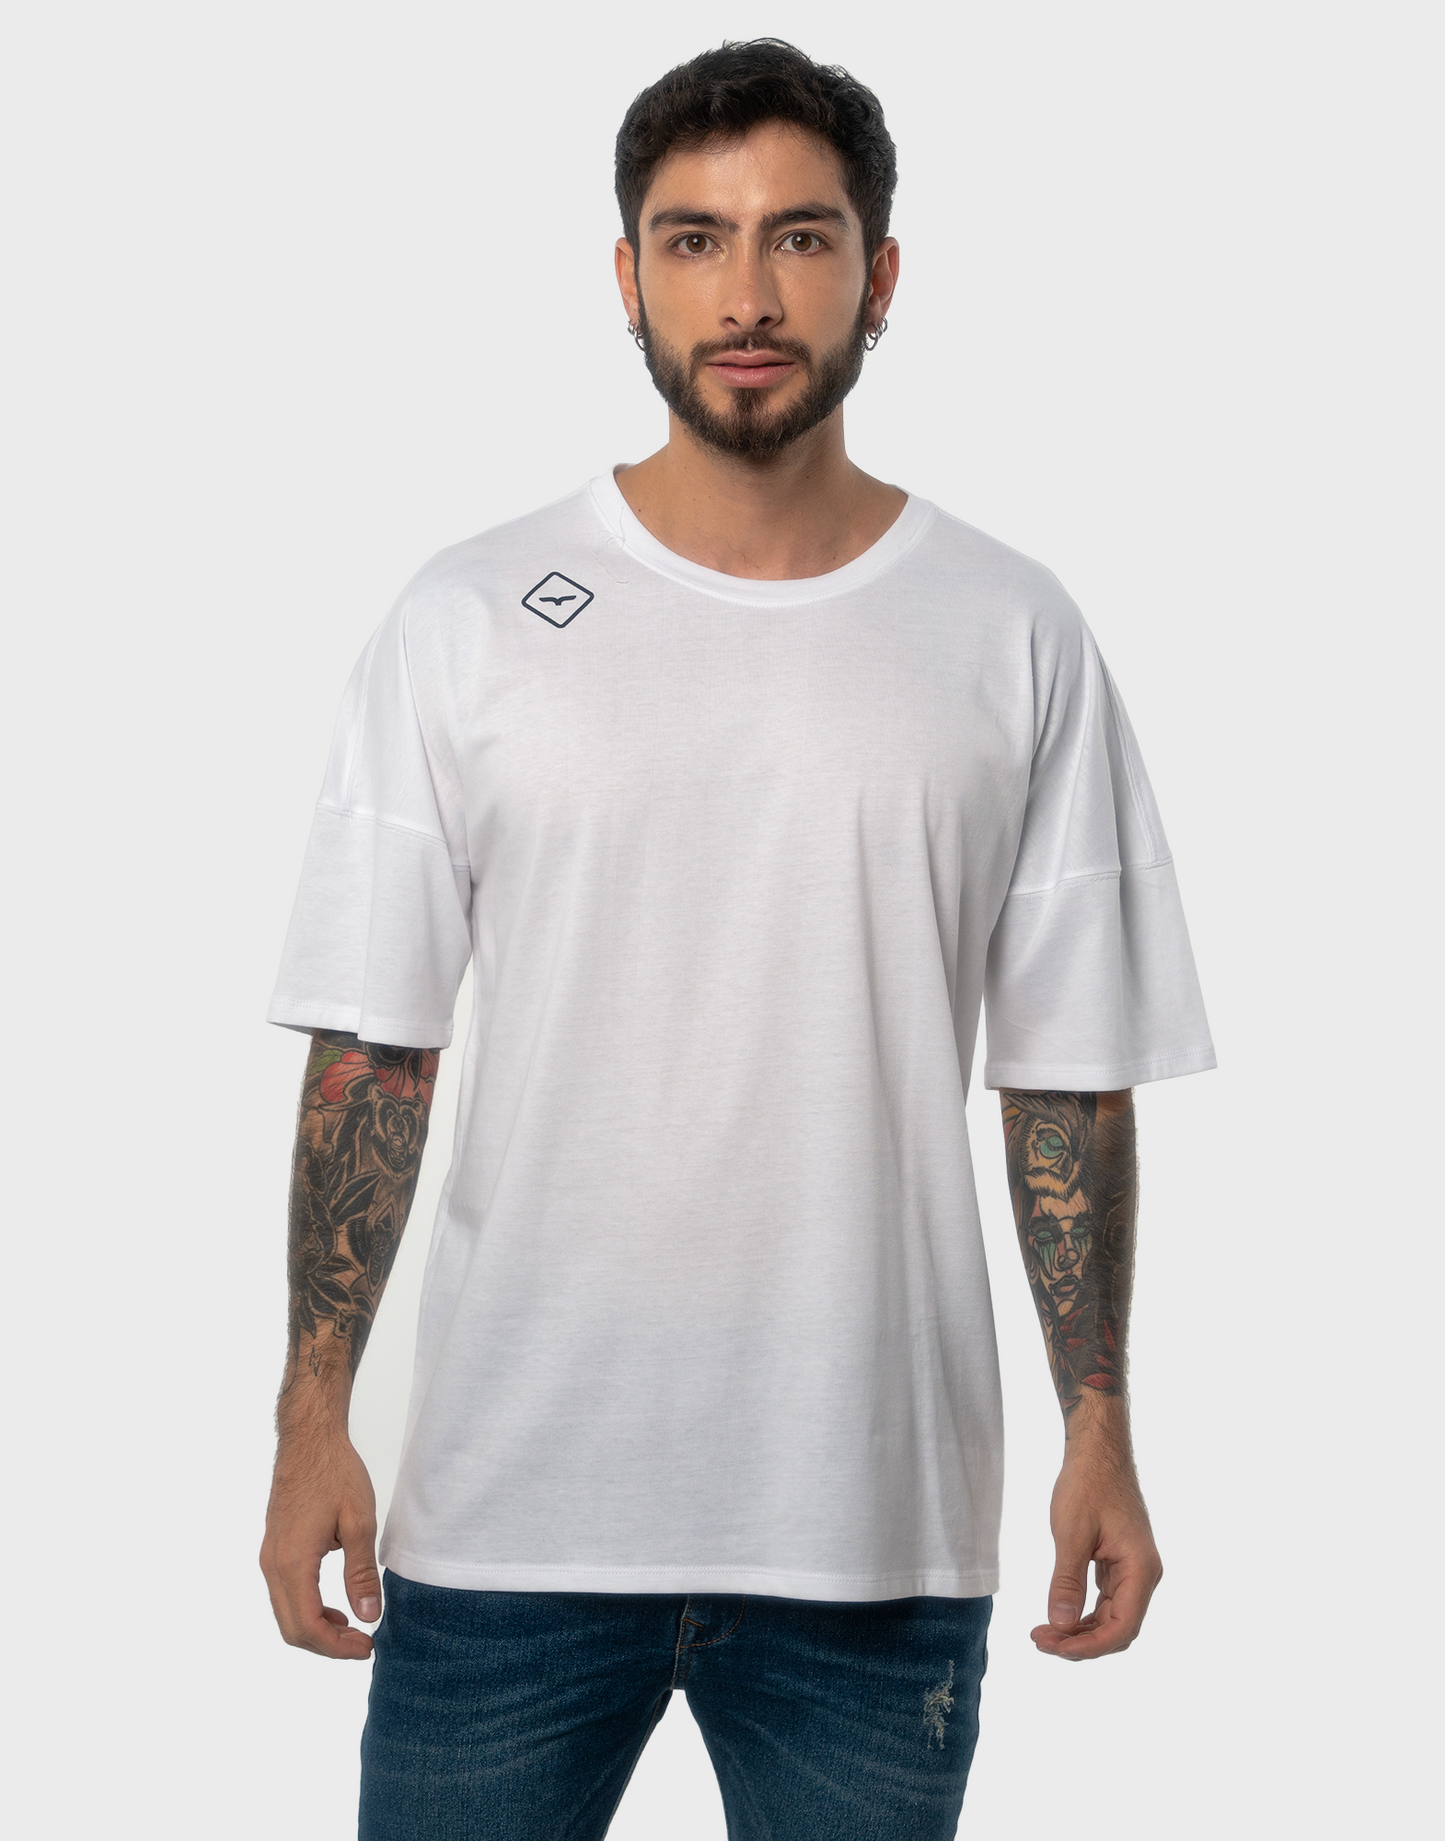 Camiseta hombre blanca estampado - N/C